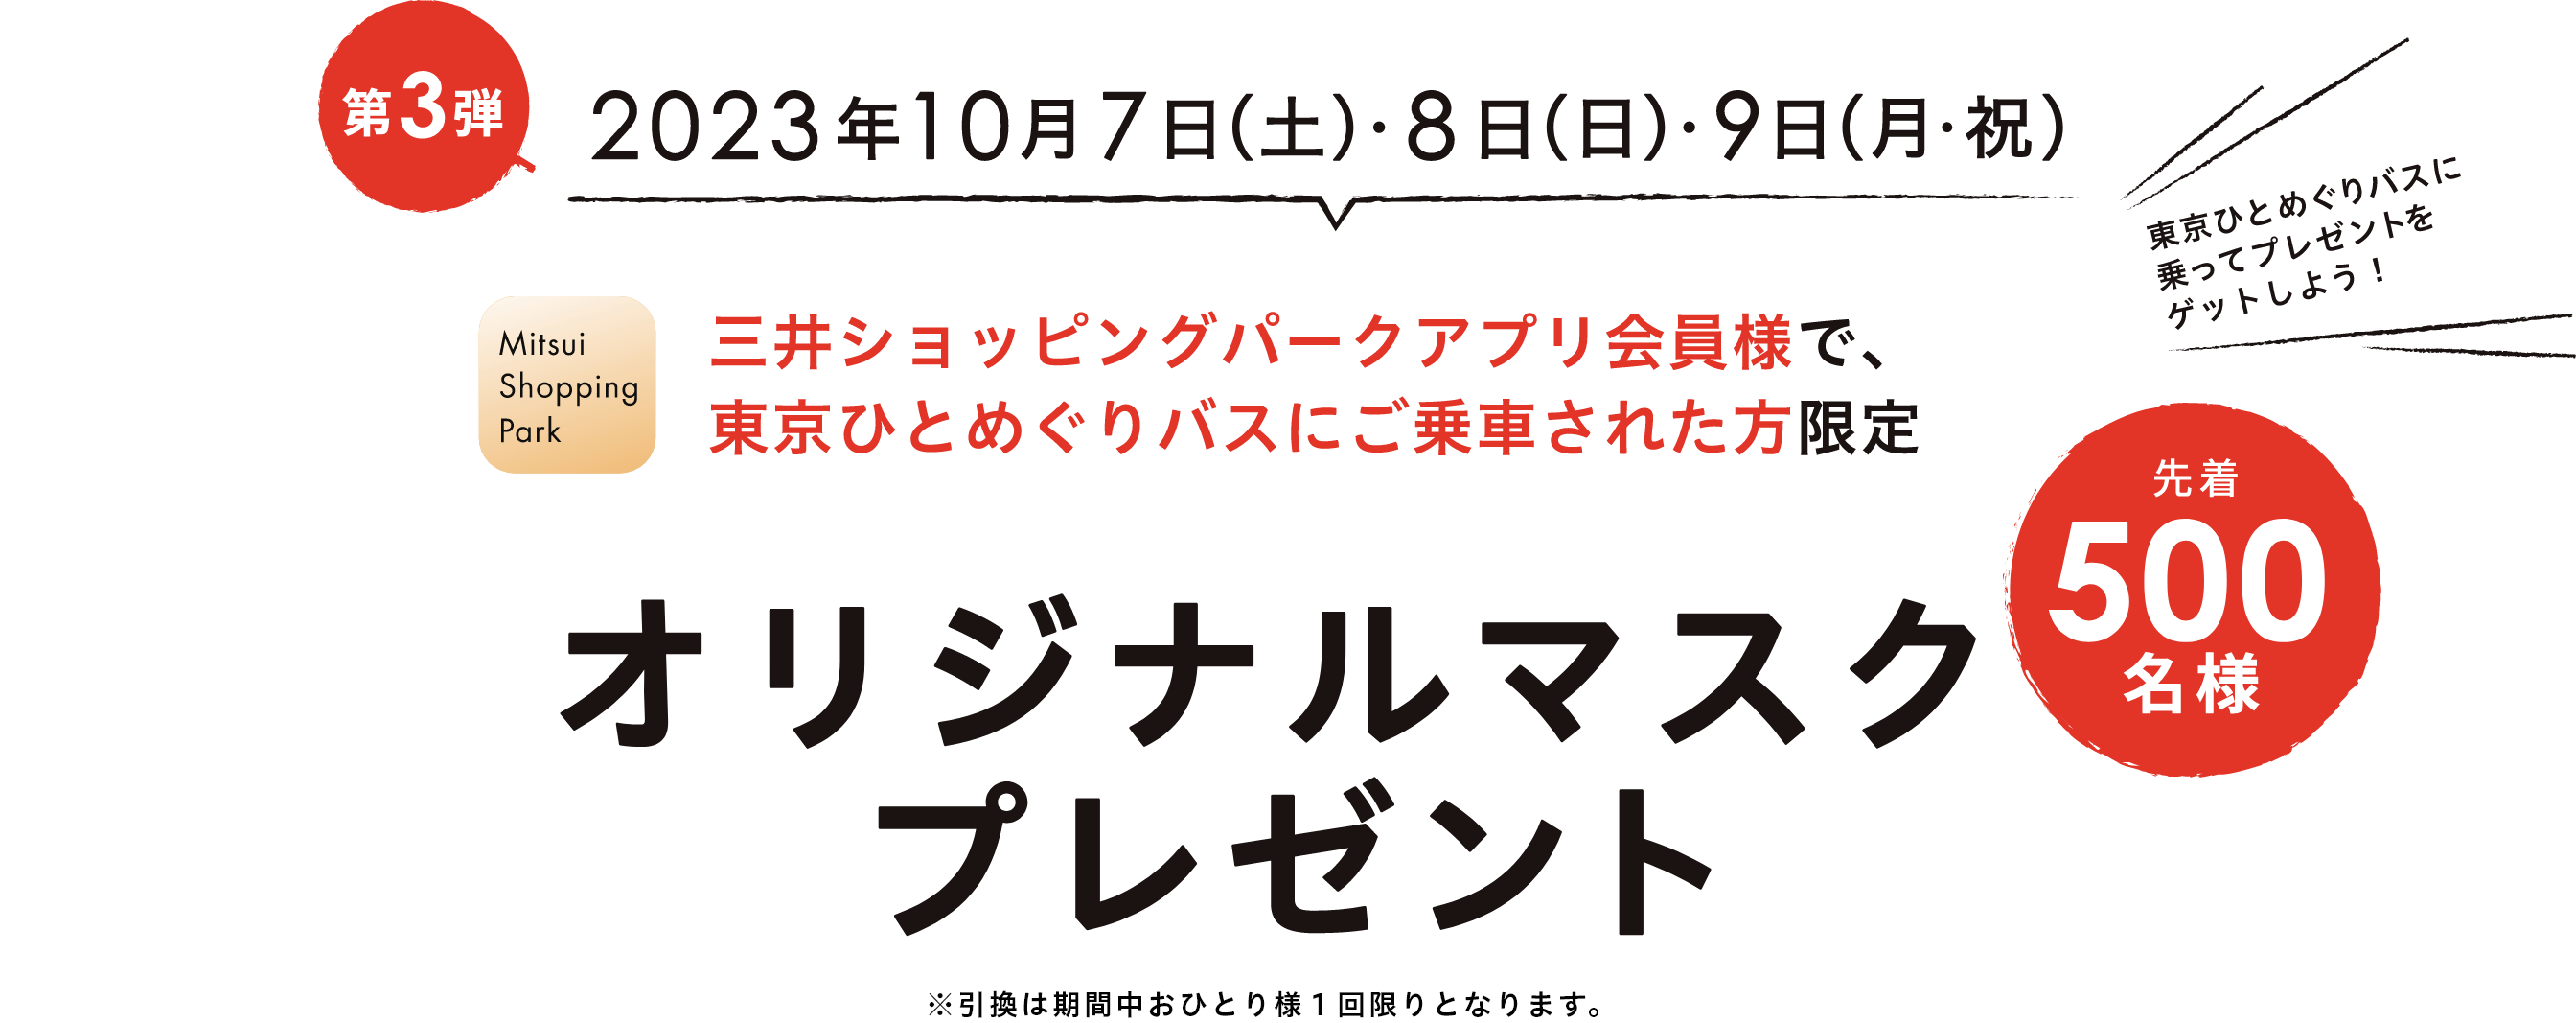 第3弾 2023年10月7日(土)・8日(日)・9日(月・祝)　三井ショッピングパークアプリ会員様で、東京ひとめぐりバスにご乗車された方限定 オリジナルマスクプレゼント